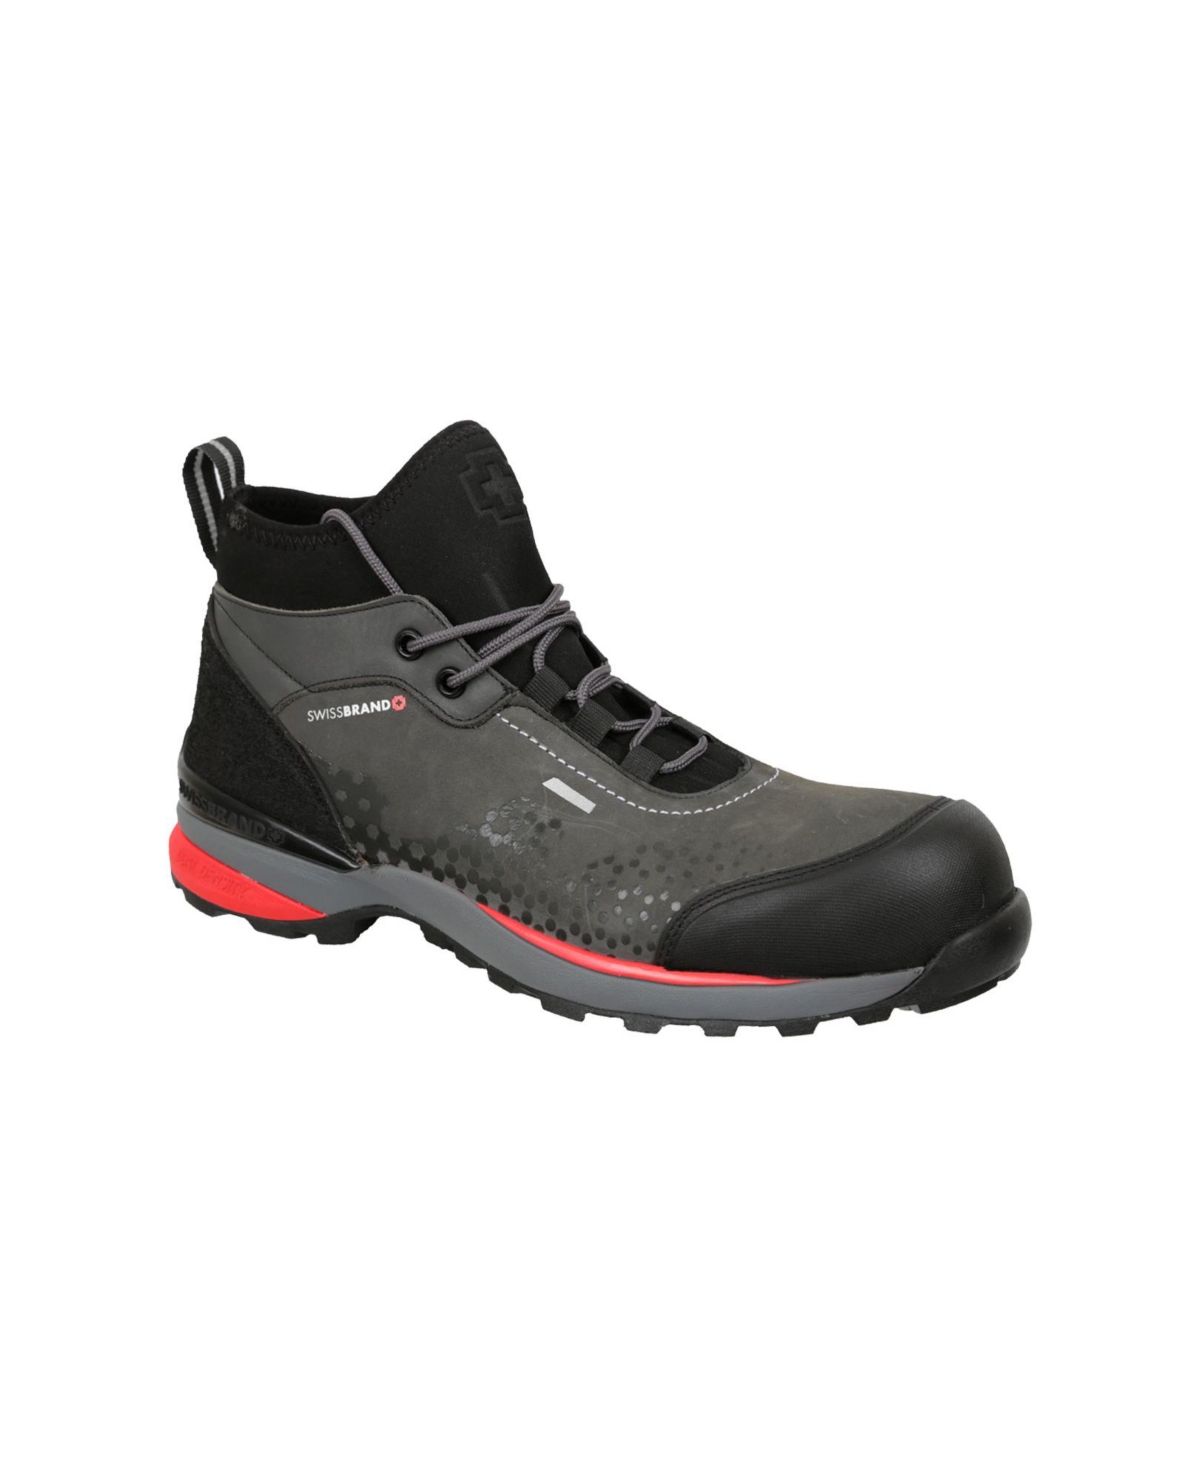 Men's Work Boots Vaud Gray 640 - Grey